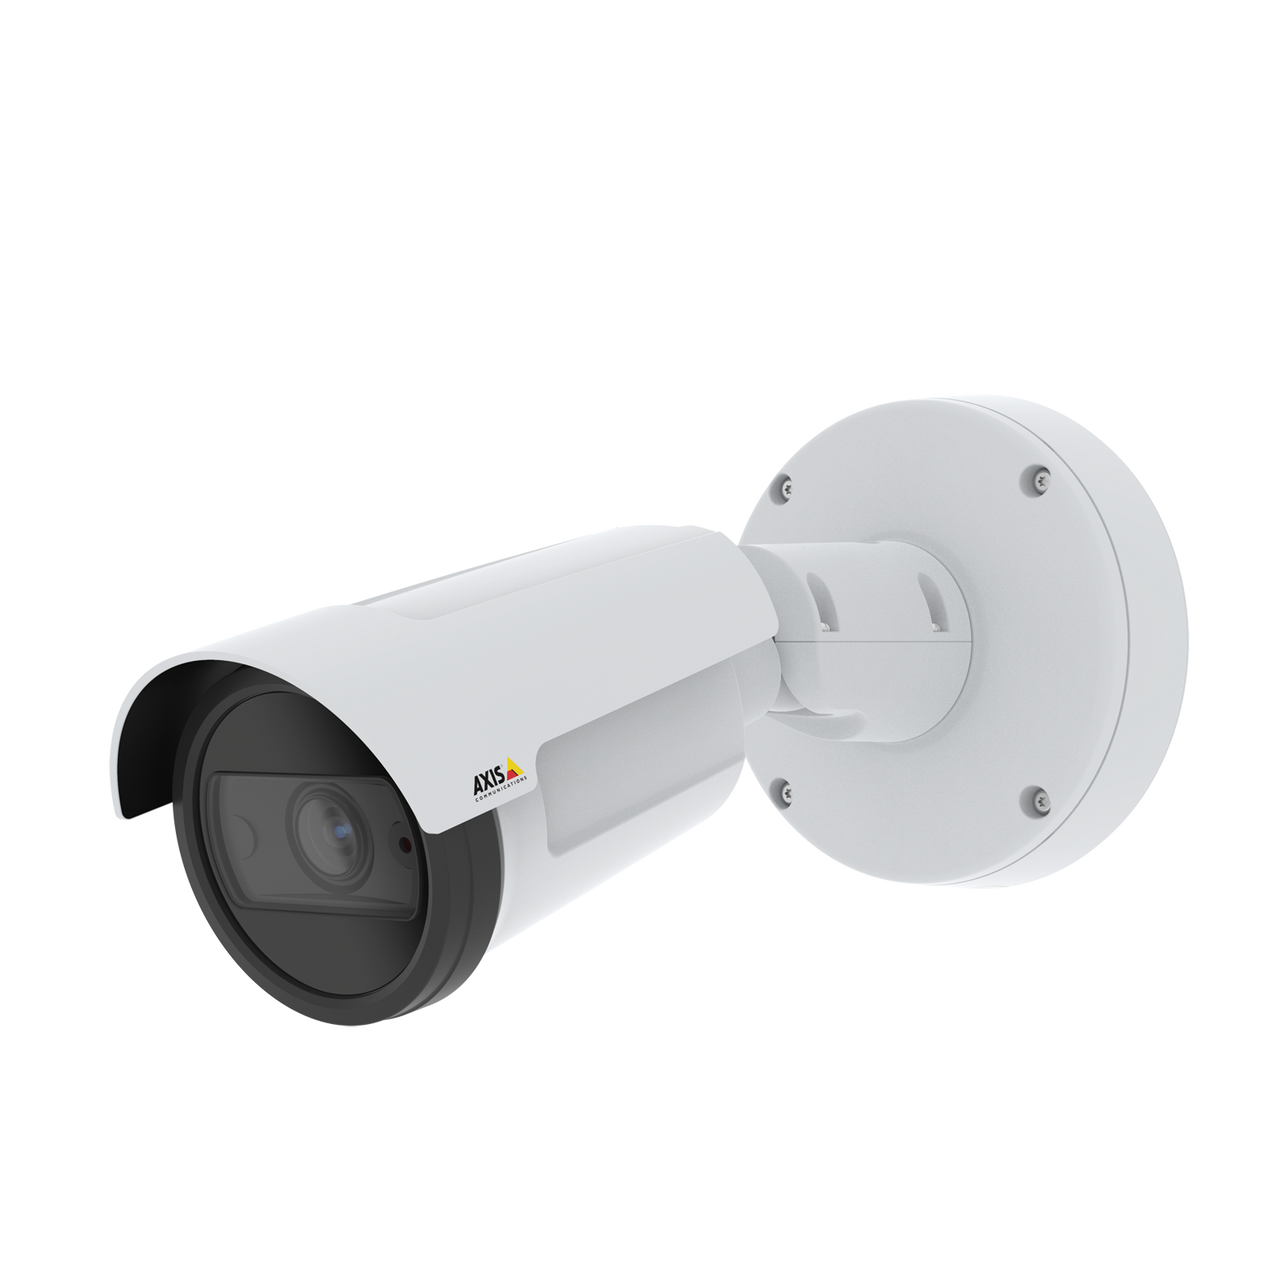 AXIS P1455-LE Versatile, feature-rich 2 MP surveillance